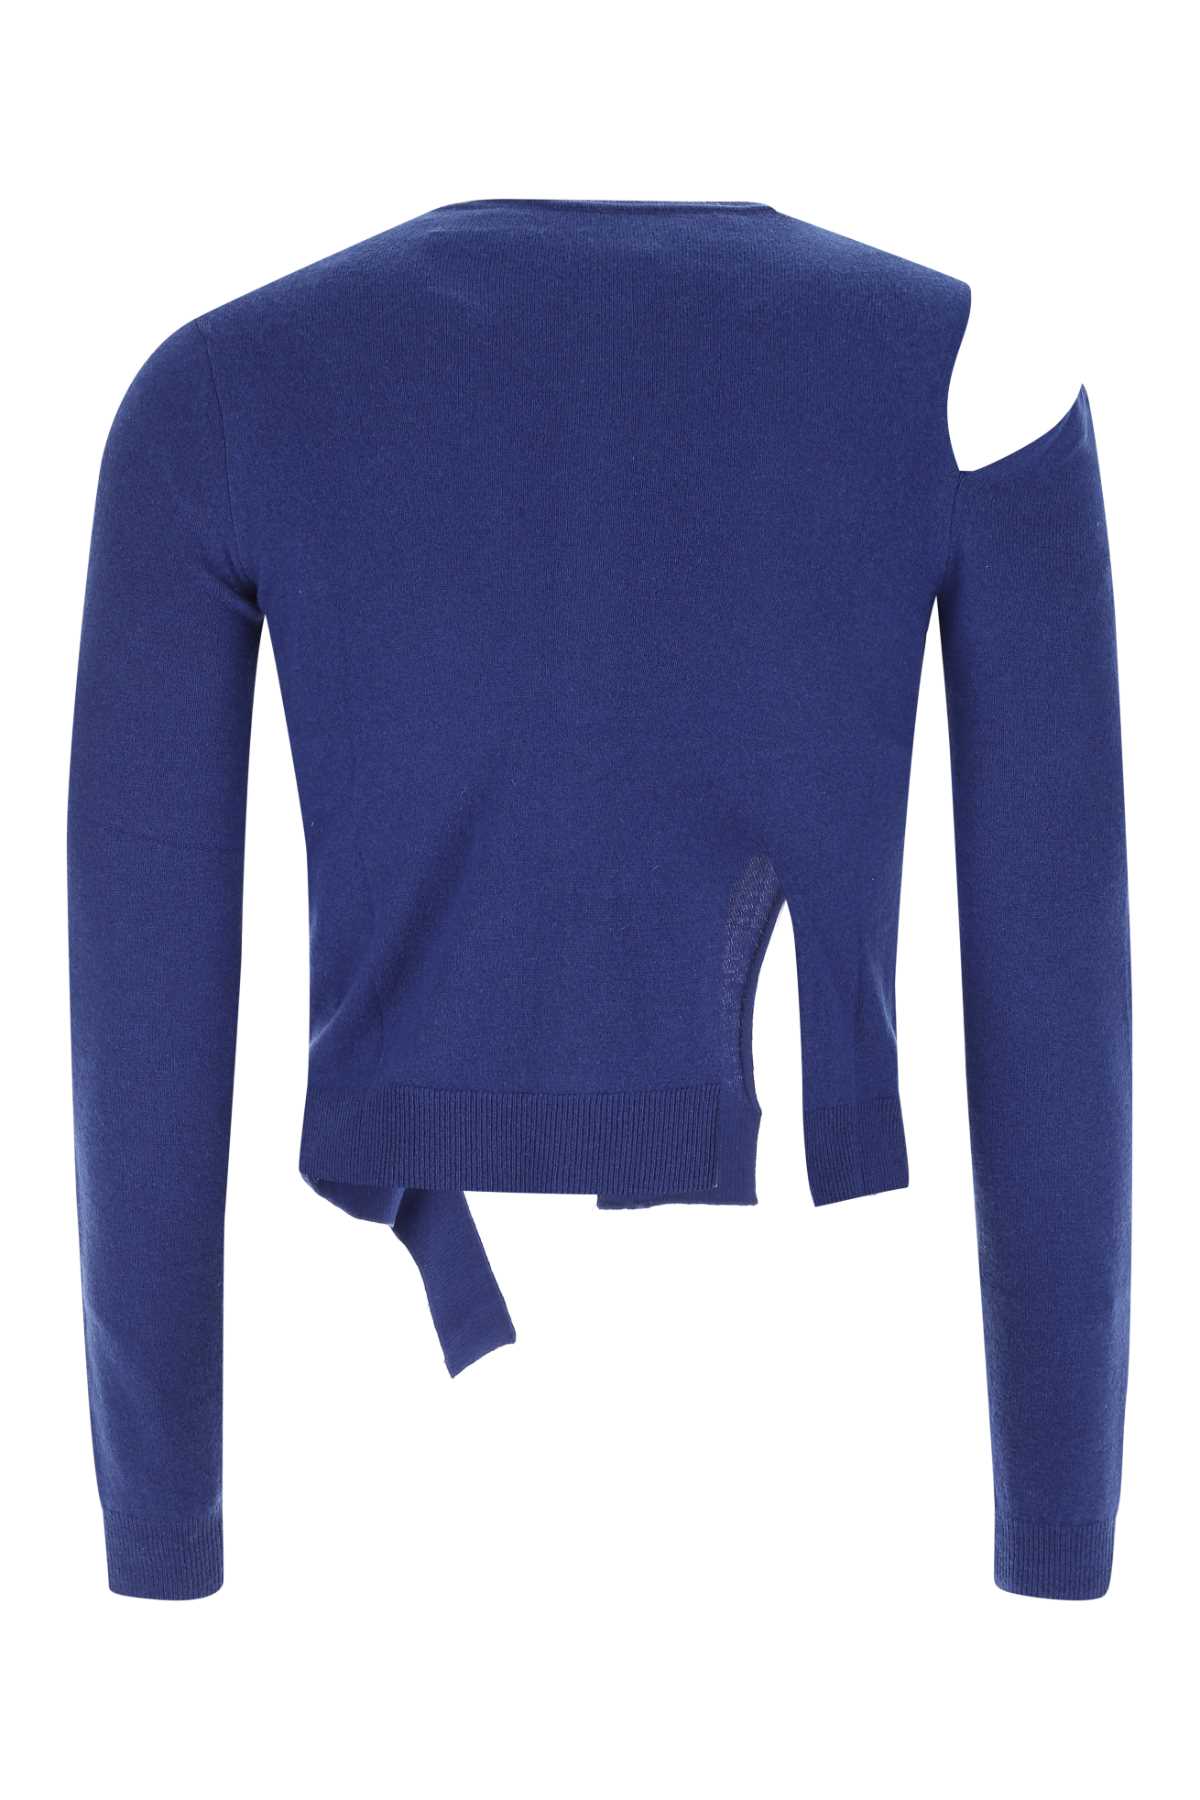 Shop Ader Error Electric Blue Wool Blend Everdeen Cardigan